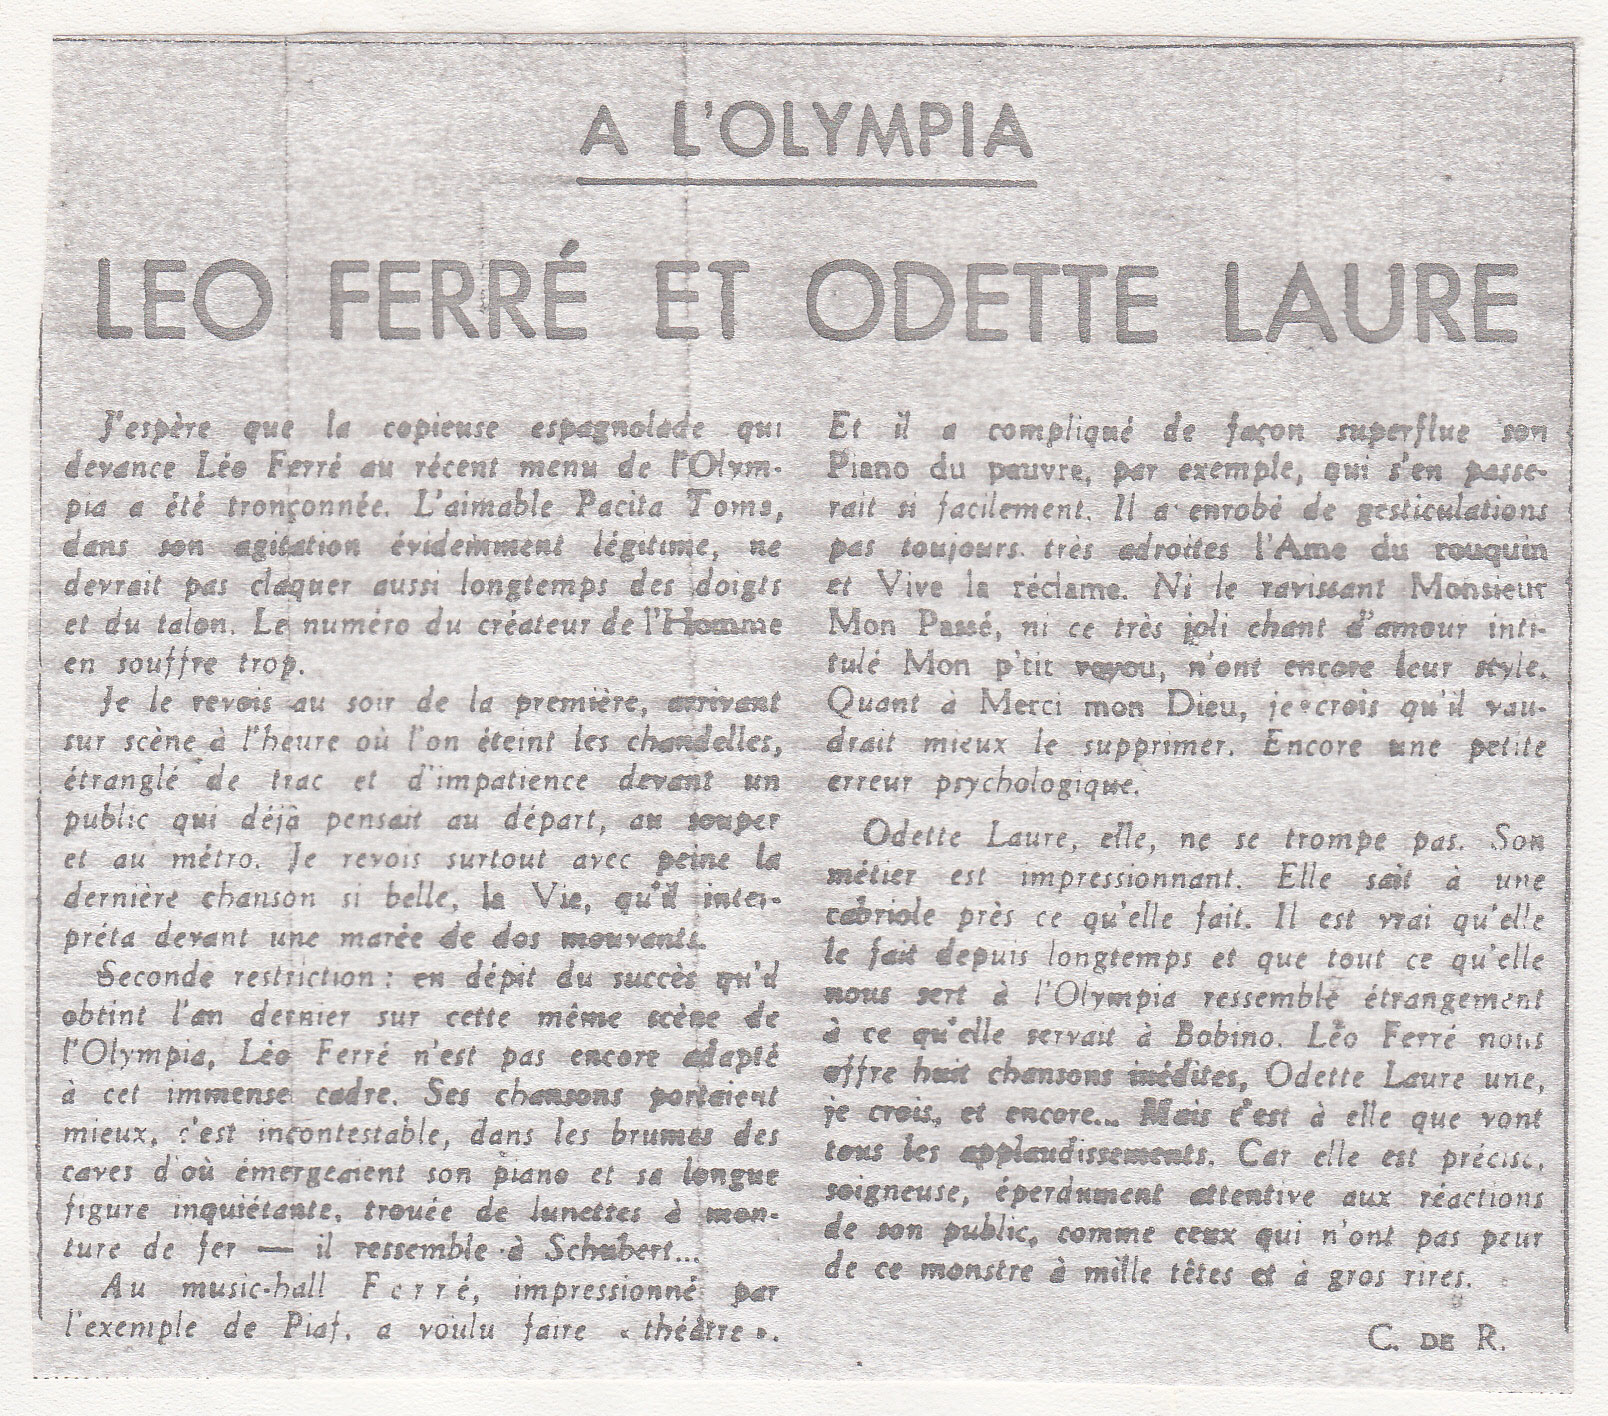 Léo Ferré, Le Monde du 18/03/1955